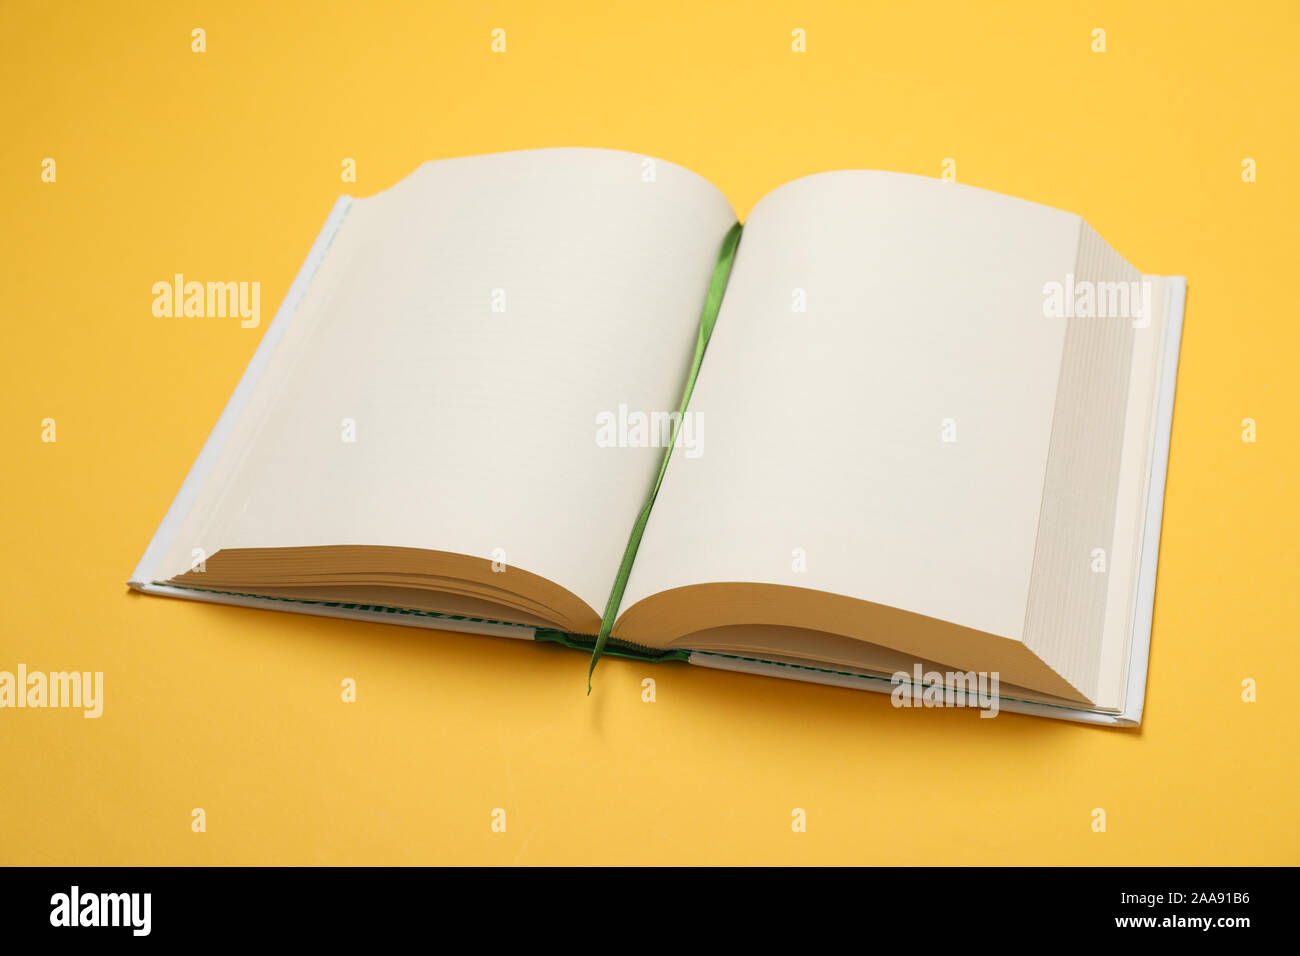 Livre vide ouvert sur fond jaune, de l'espace pour le texte Banque D'Images